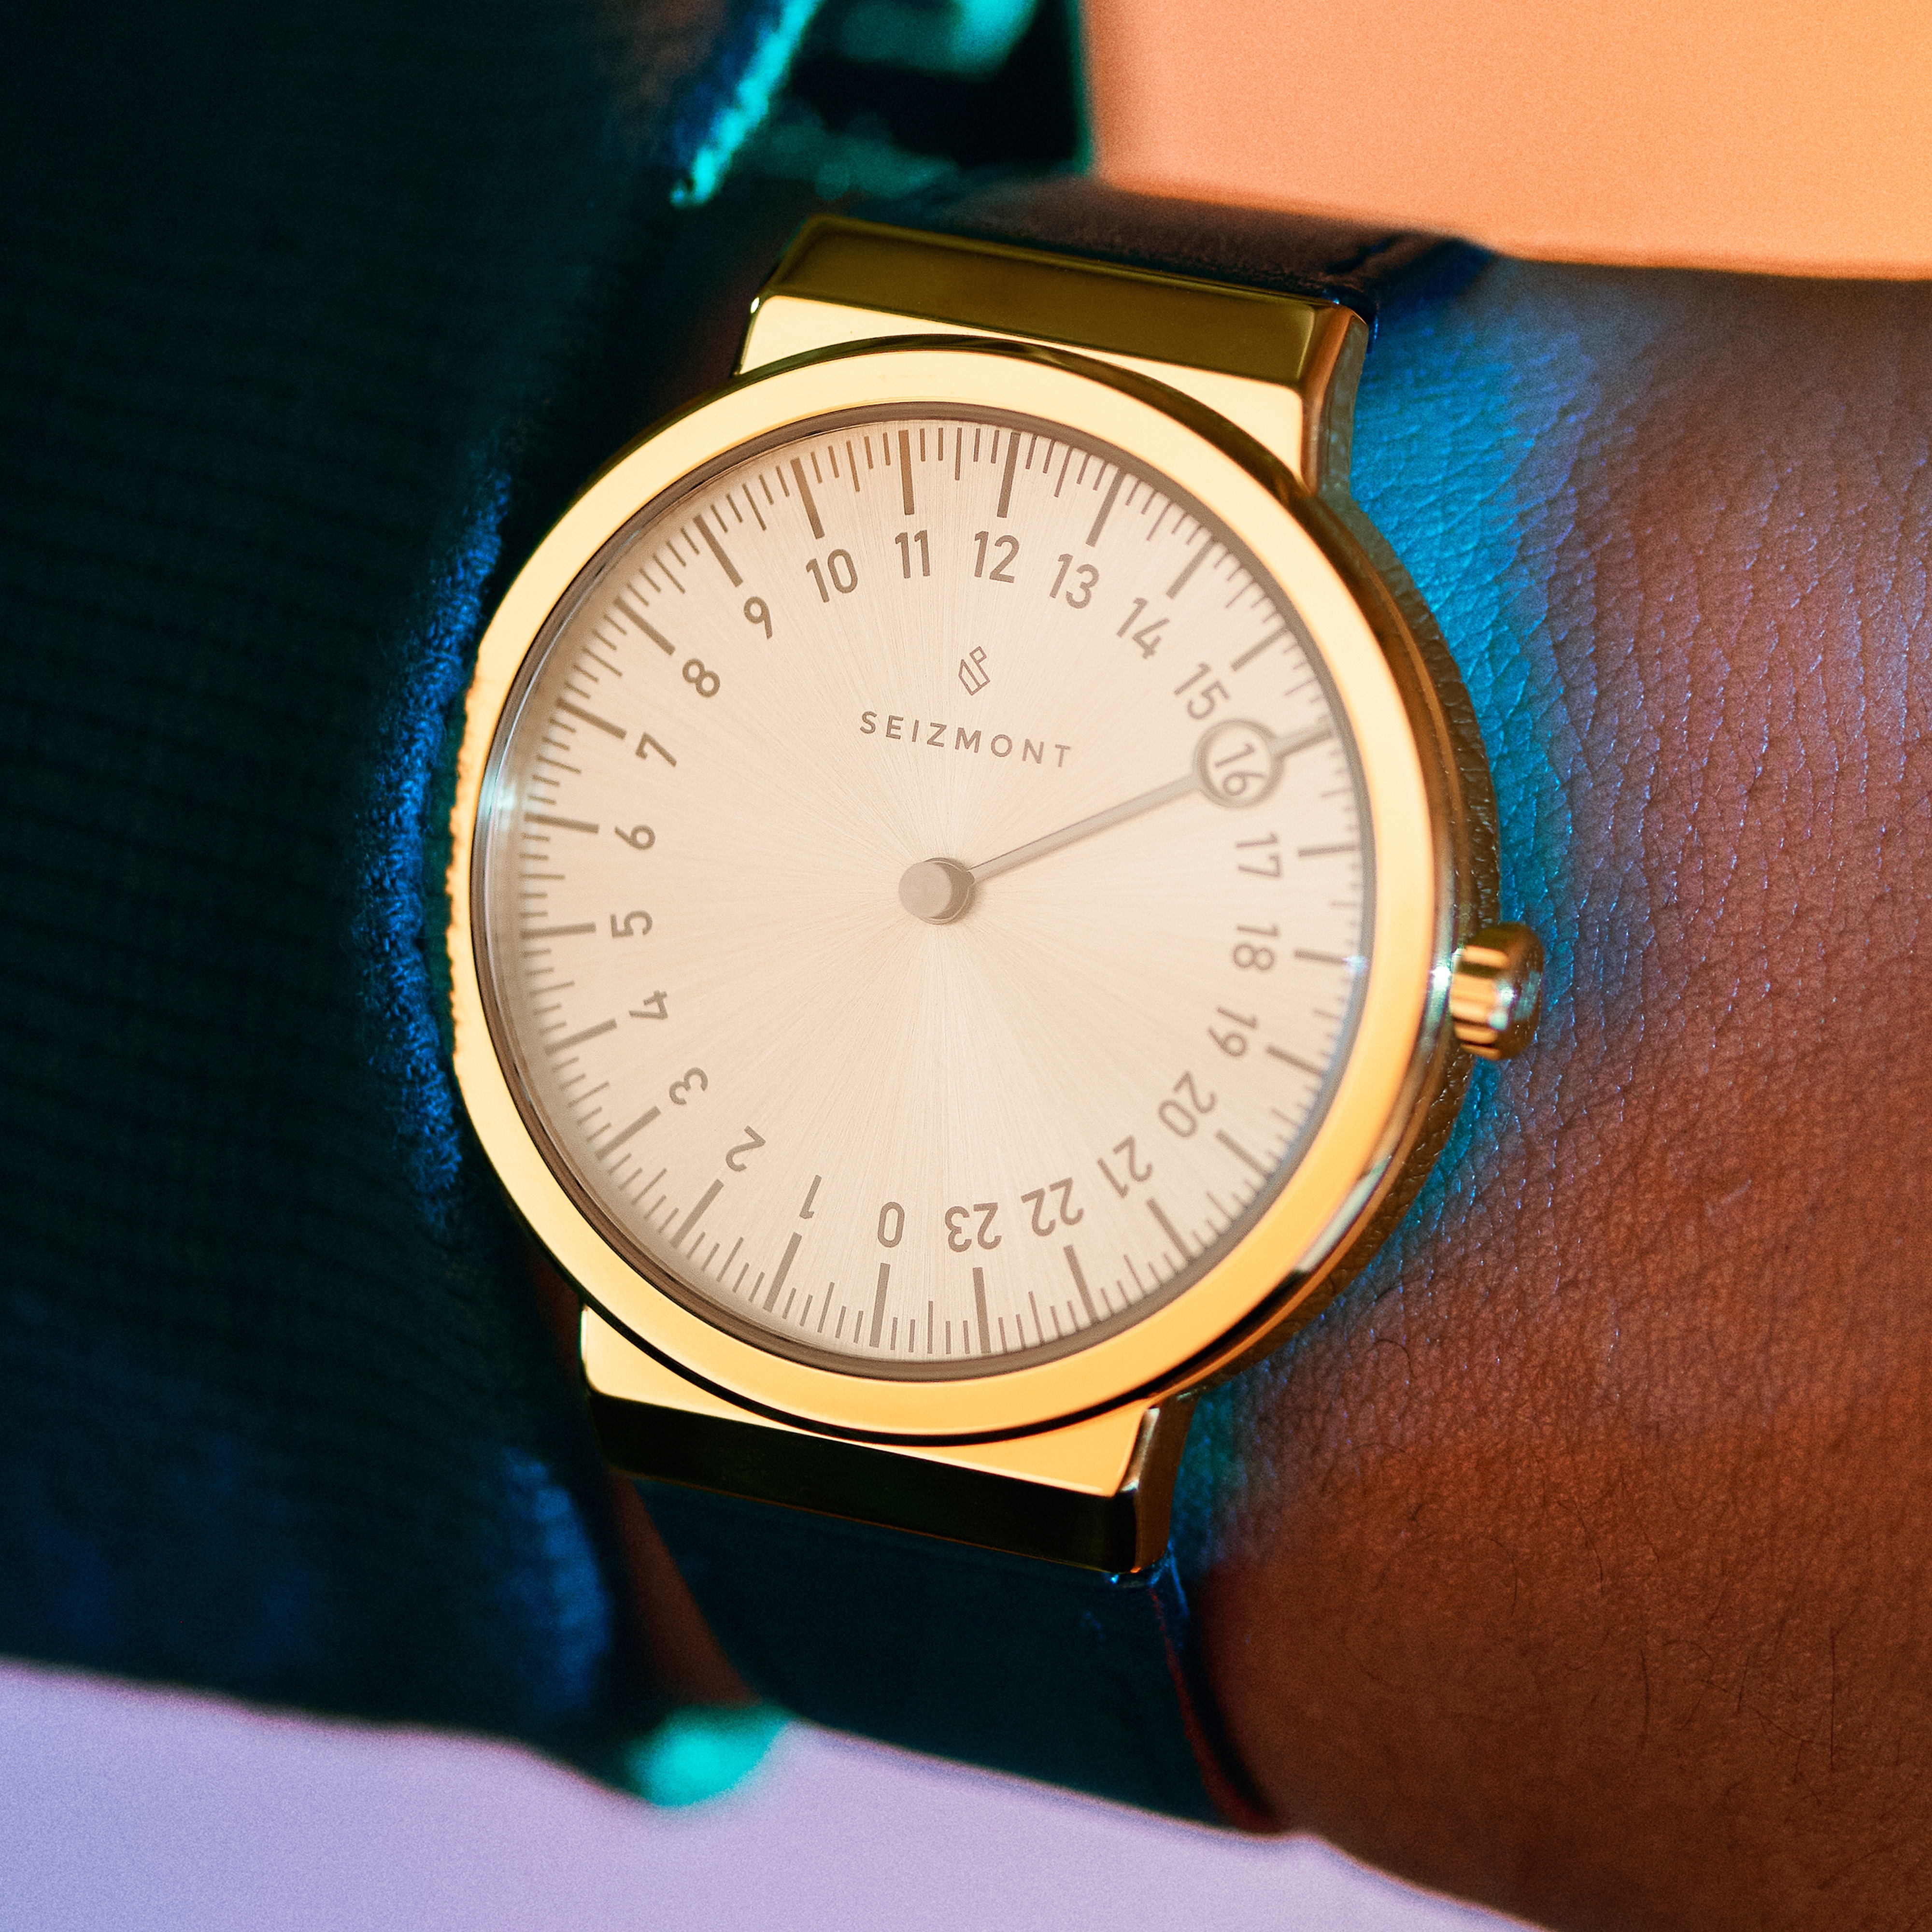 Wat is een 24-uurs horloge met wijzer & waarom zou je die dragen?